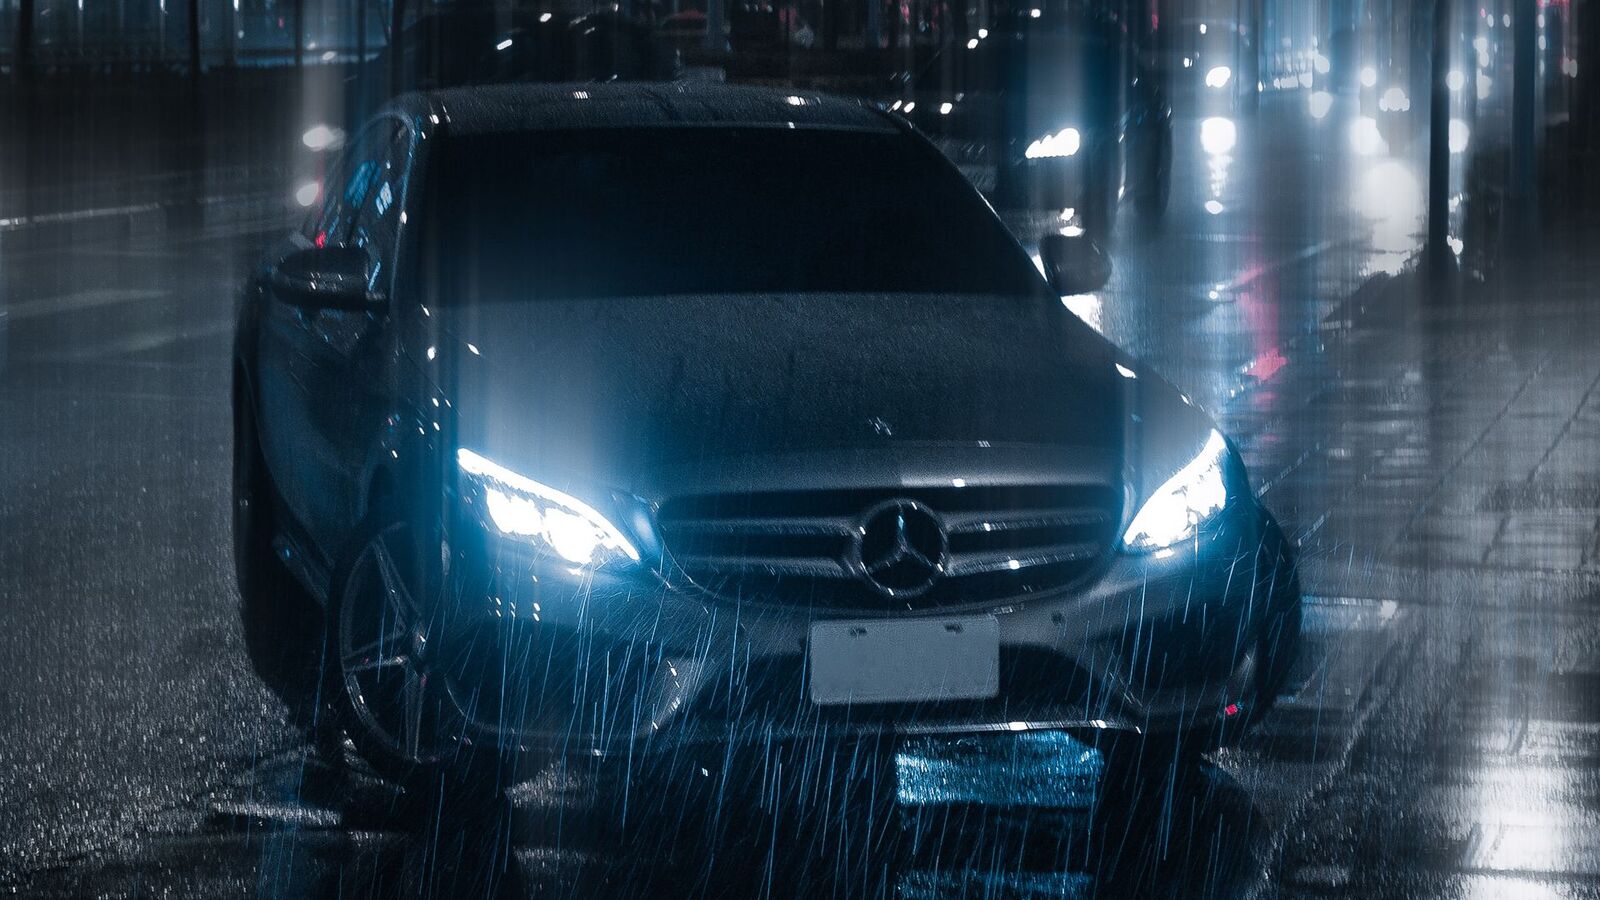 car_night_rain_143166_1920x1080.jpg